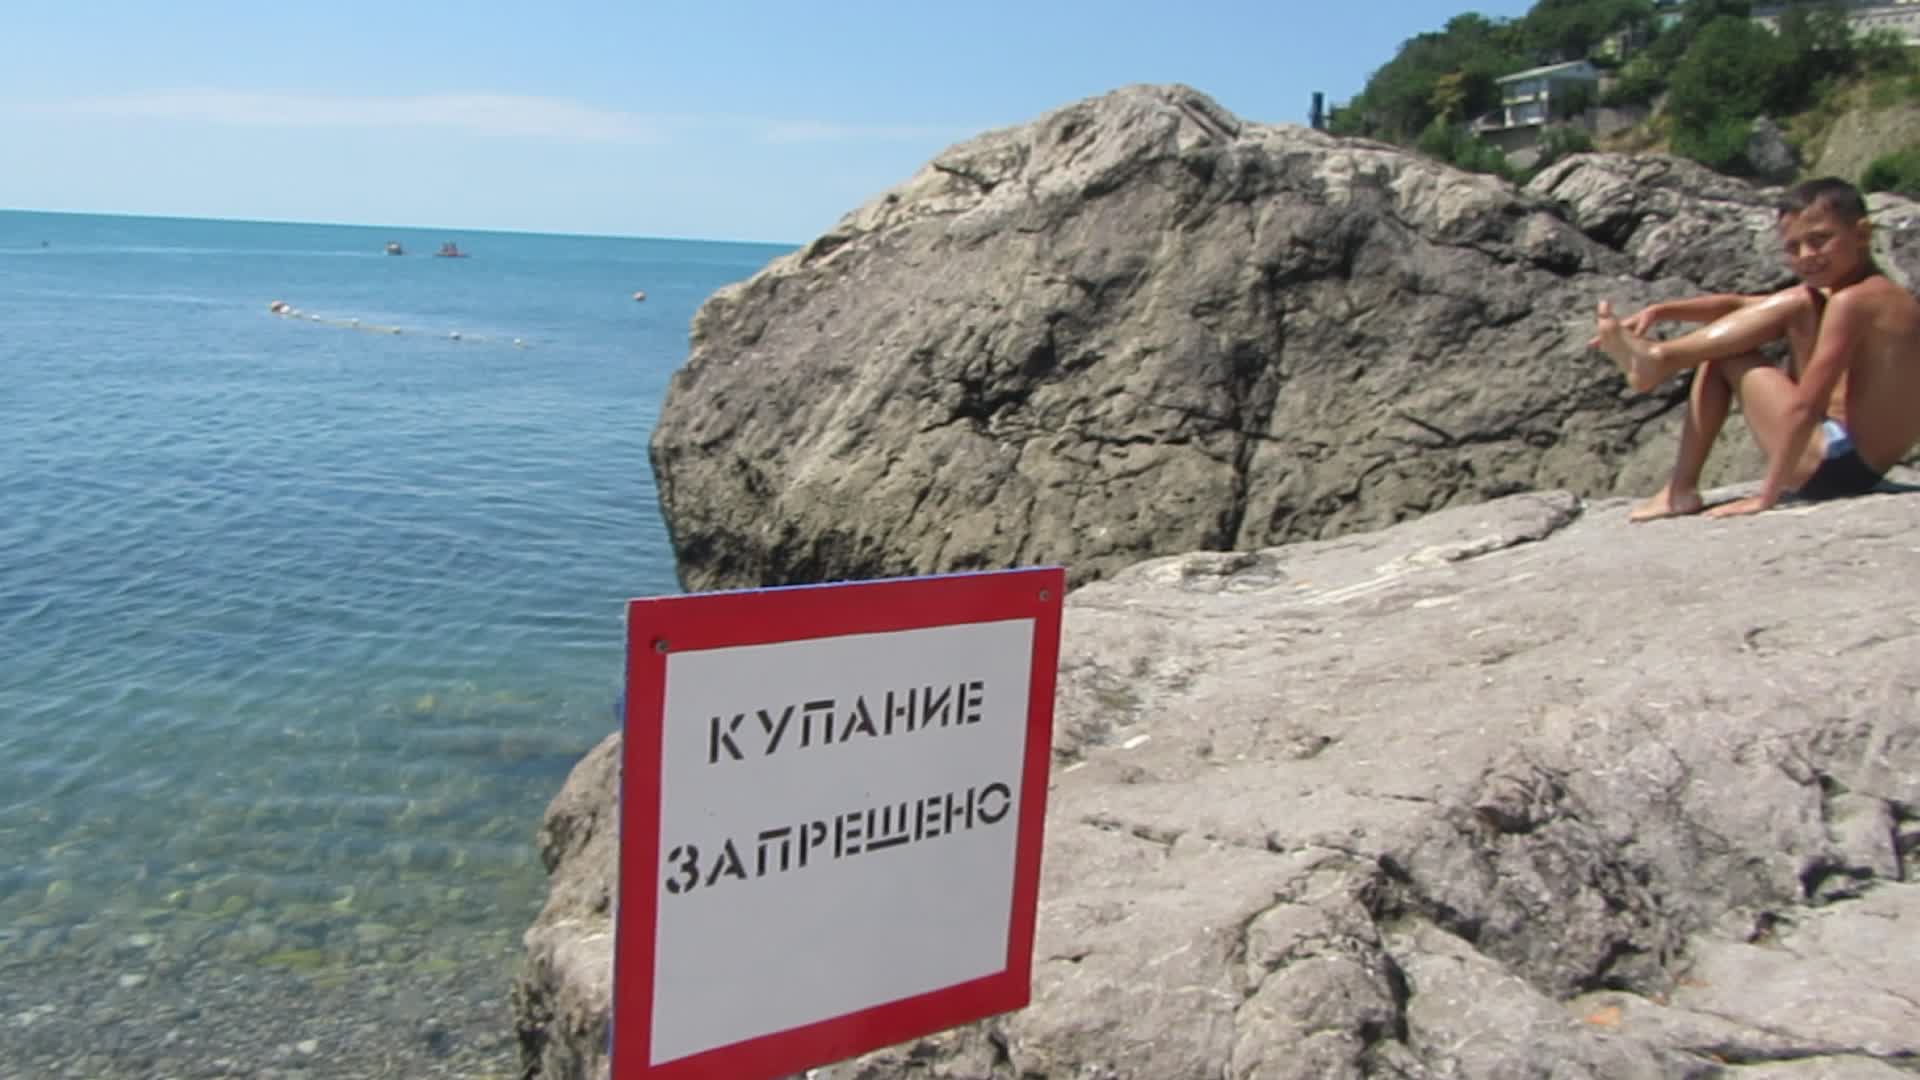 Купание крым. Пляжи Крыма. Купаться запрещено. Купание запрещено табличка. Севастополь пляжи.